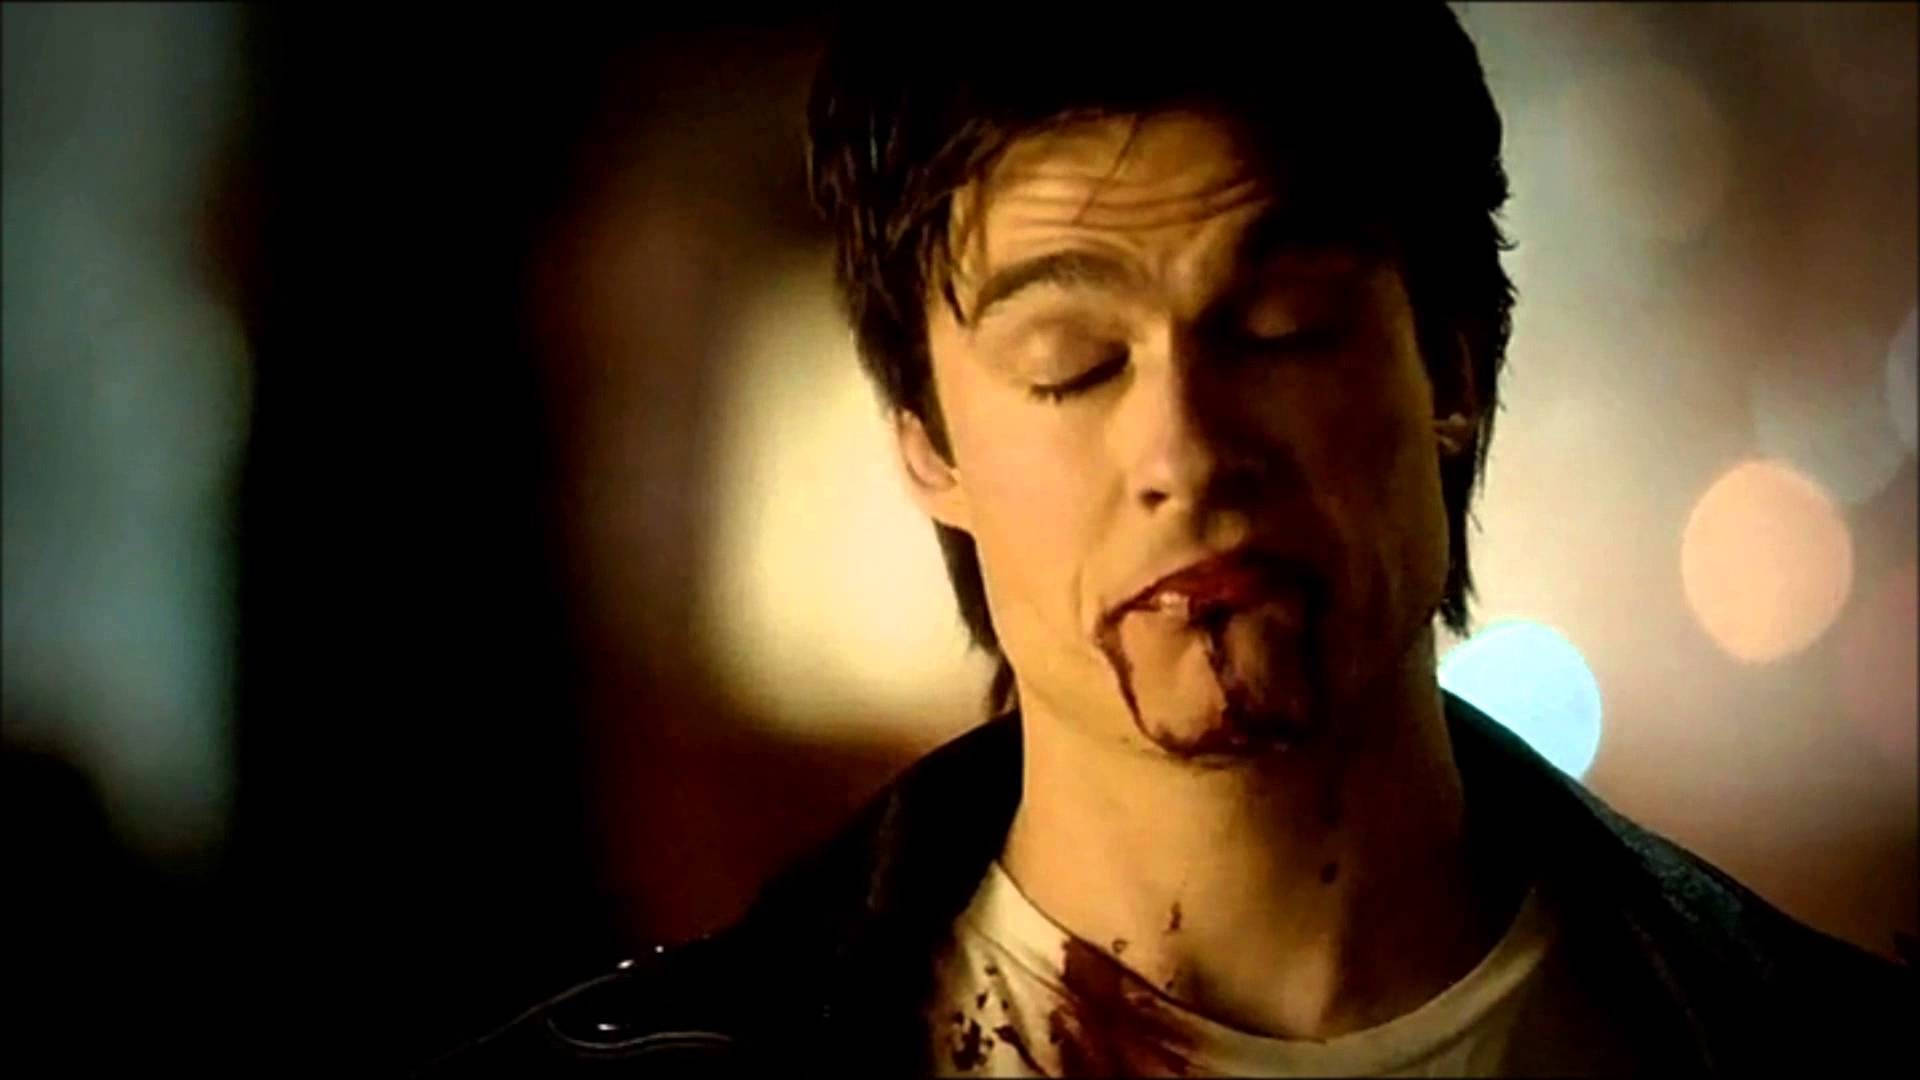 Stefan Salvatore Being A Vampire